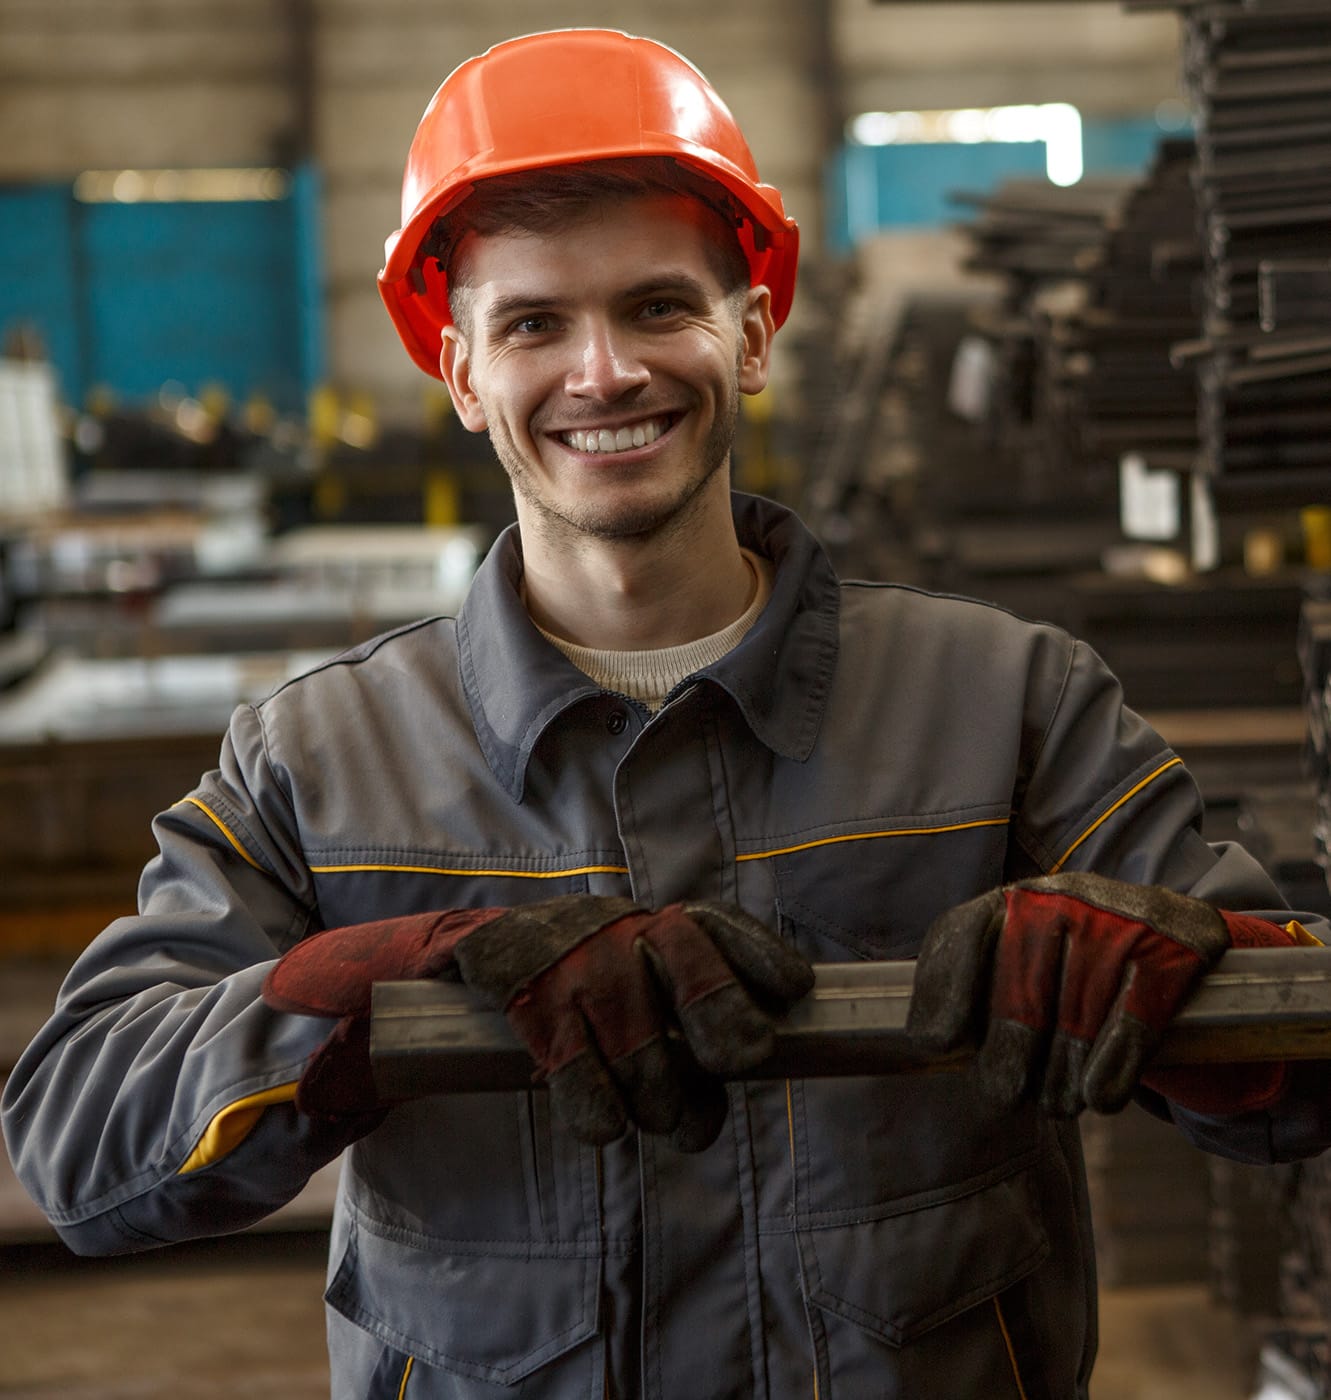 Portrait of happy worker in gray uniform, orange helmet and protective suit standing hear metal tubes.